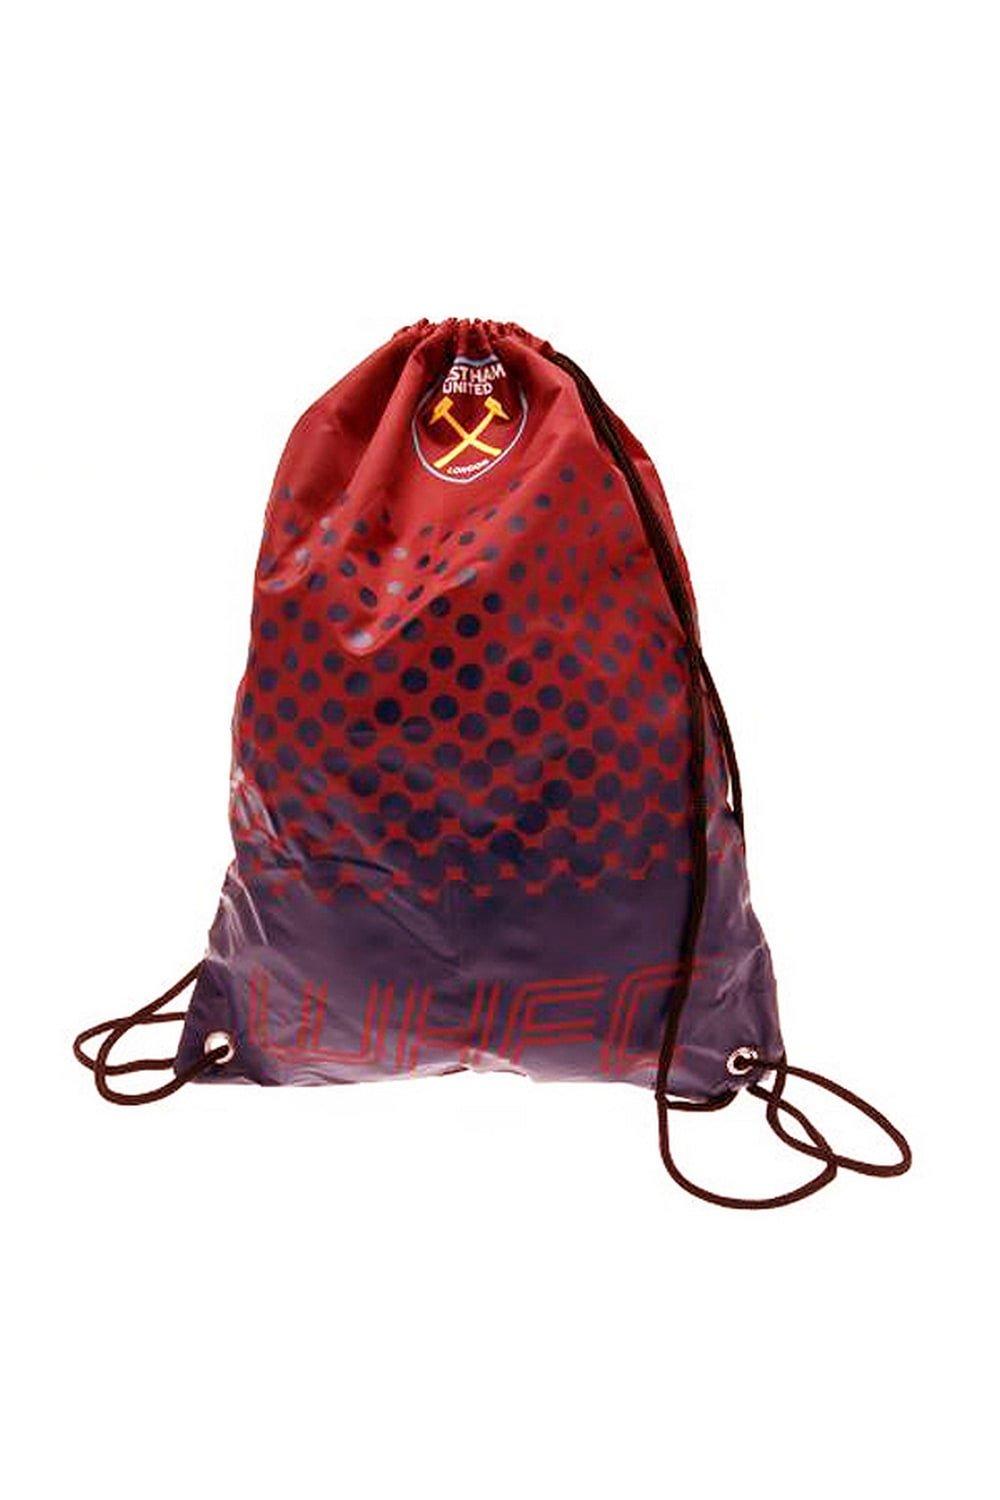 цена Официальная спортивная сумка West Ham FC Fade Football Crest со шнурком для спортзала West Ham United FC, красный